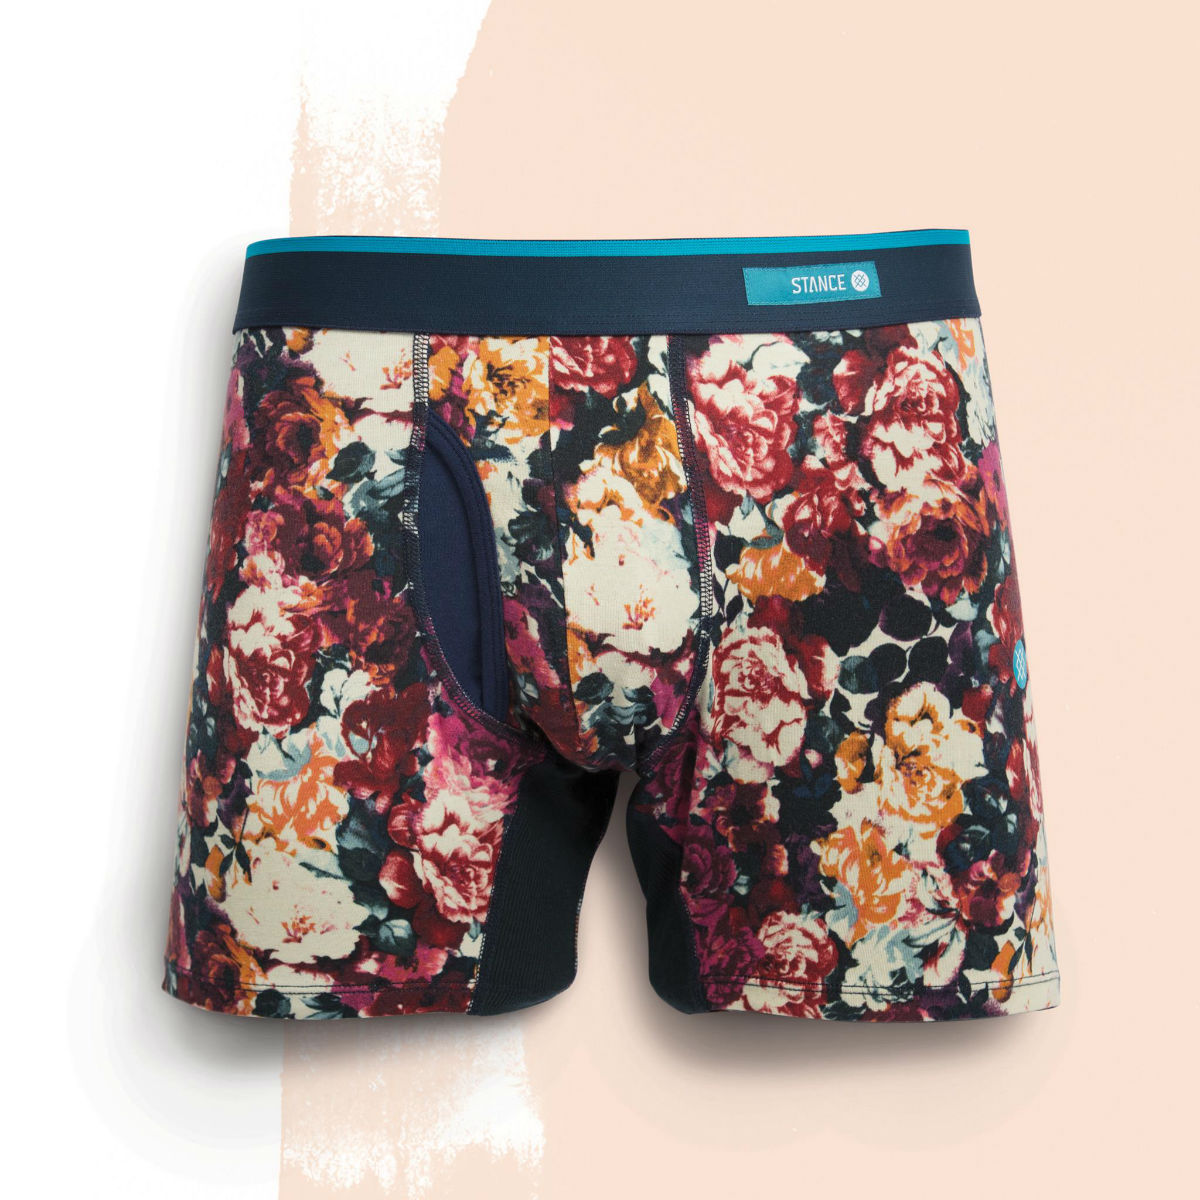 ☀️ New Summer Underwear From Stance 👀 - Stance